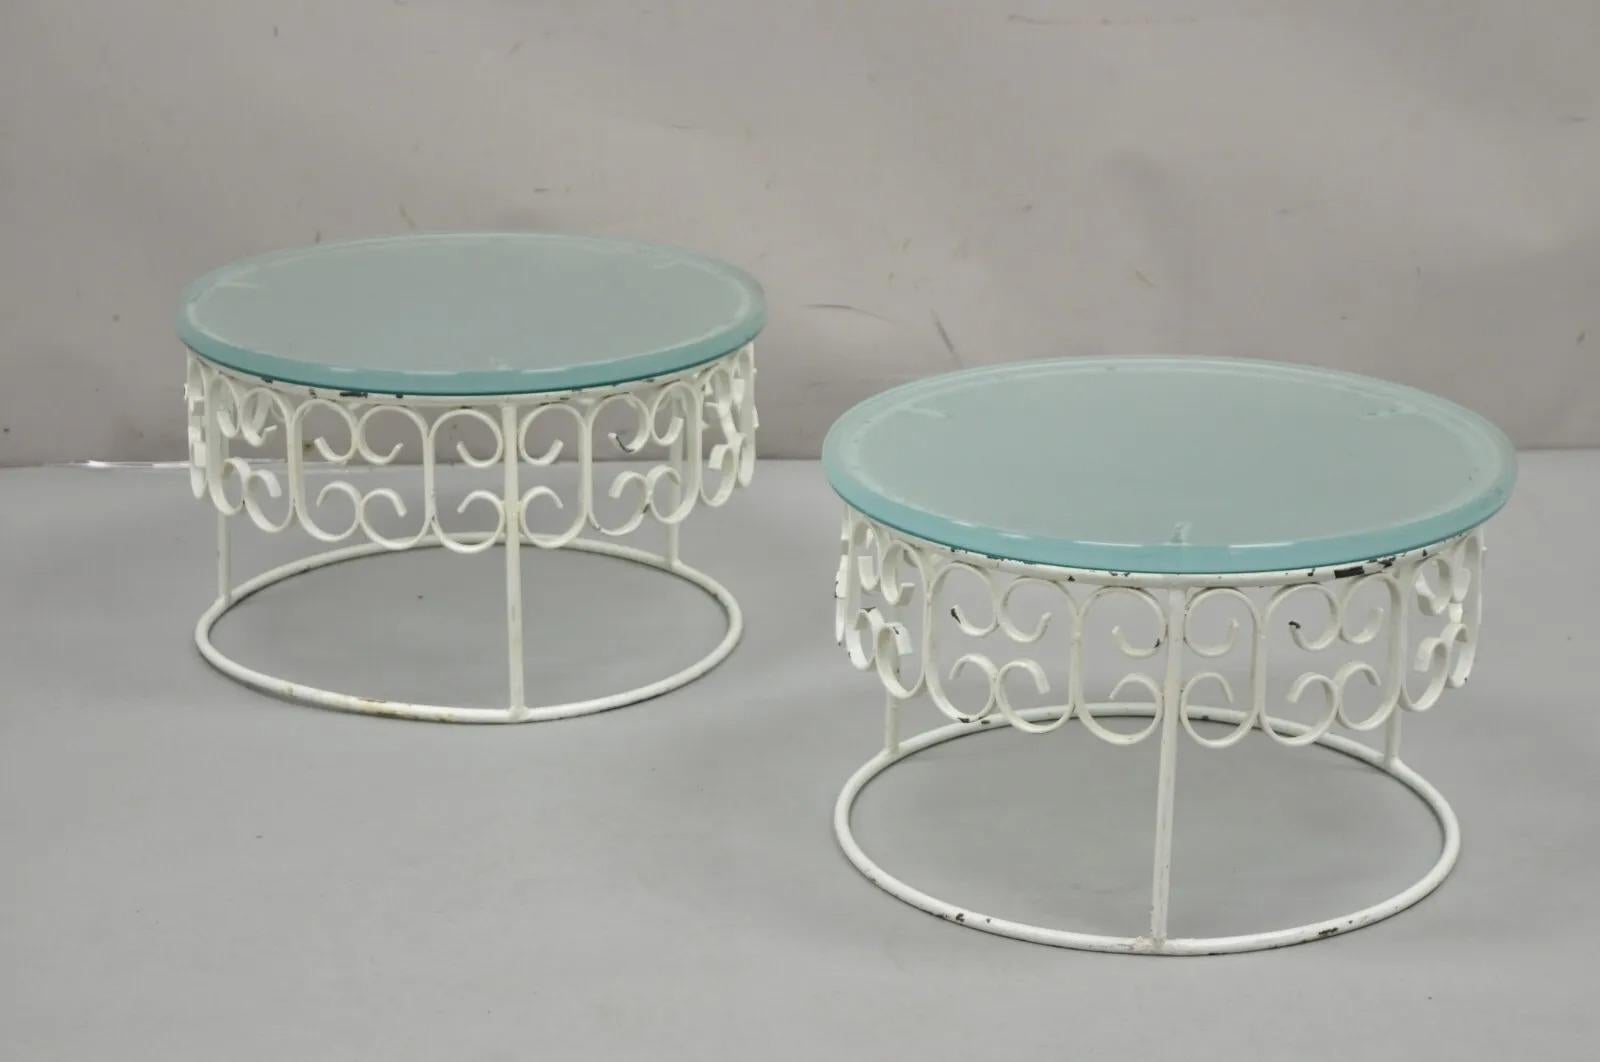 Vintage Arthur Umanoff Wrought Iron Scroll Low Round Glass Top Side Tables - ein Paar. Der Artikel hat dicke runde Milchglasplatten, runde Sockel aus Schmiedeeisen und eine schöne, einzigartige niedrige Form. Um 1960er. Abmessungen: 11